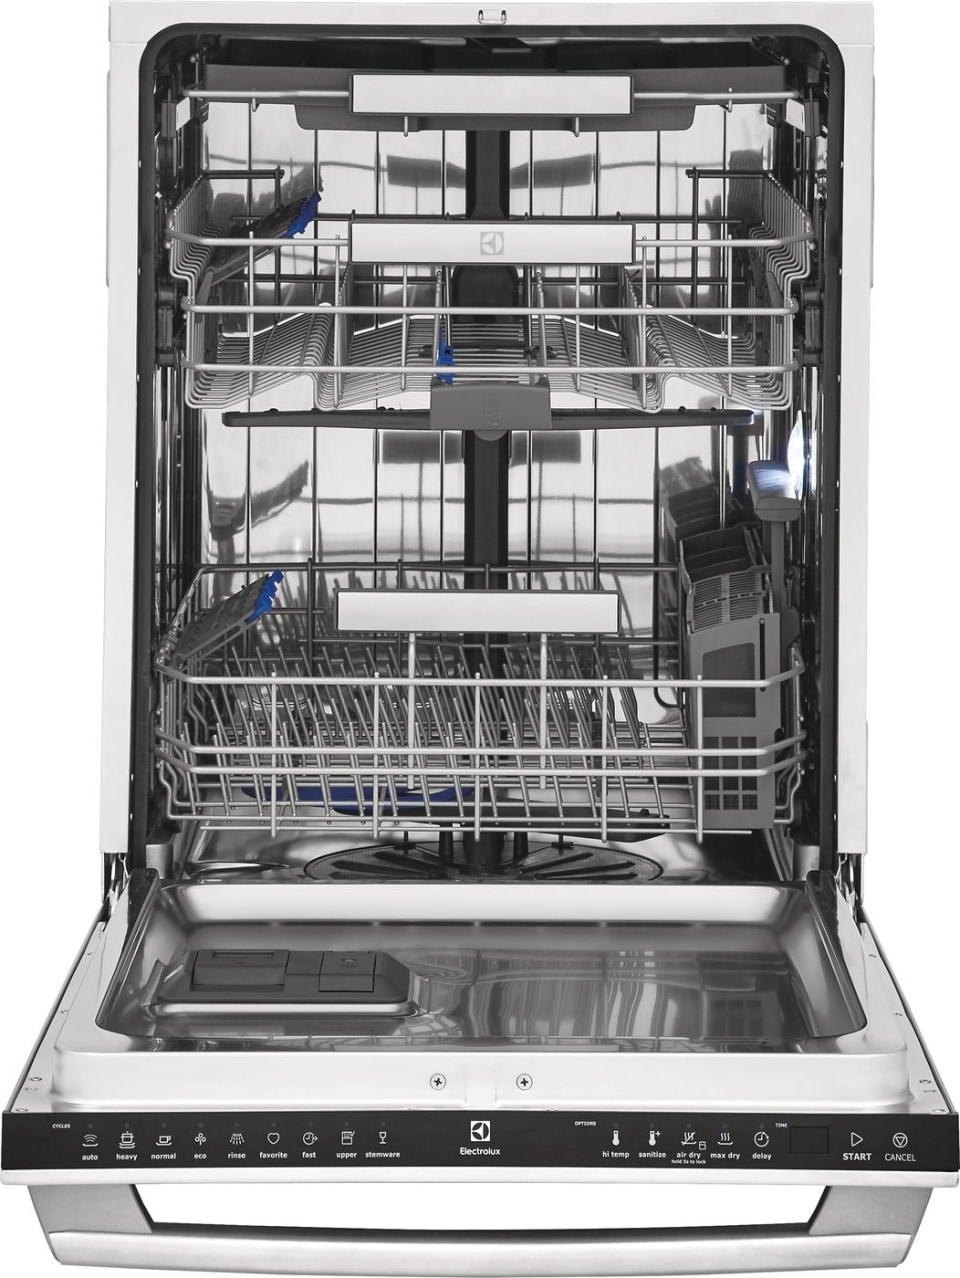 Встроенная посудомойка 45 рейтинг. Посудомоечная машина Electrolux 45 см. Электролюкс посудомойка 45 встраиваемая. ПММ Электролюкс 45 встраиваемая. Электролюкс посудомоечная машина 45 см.